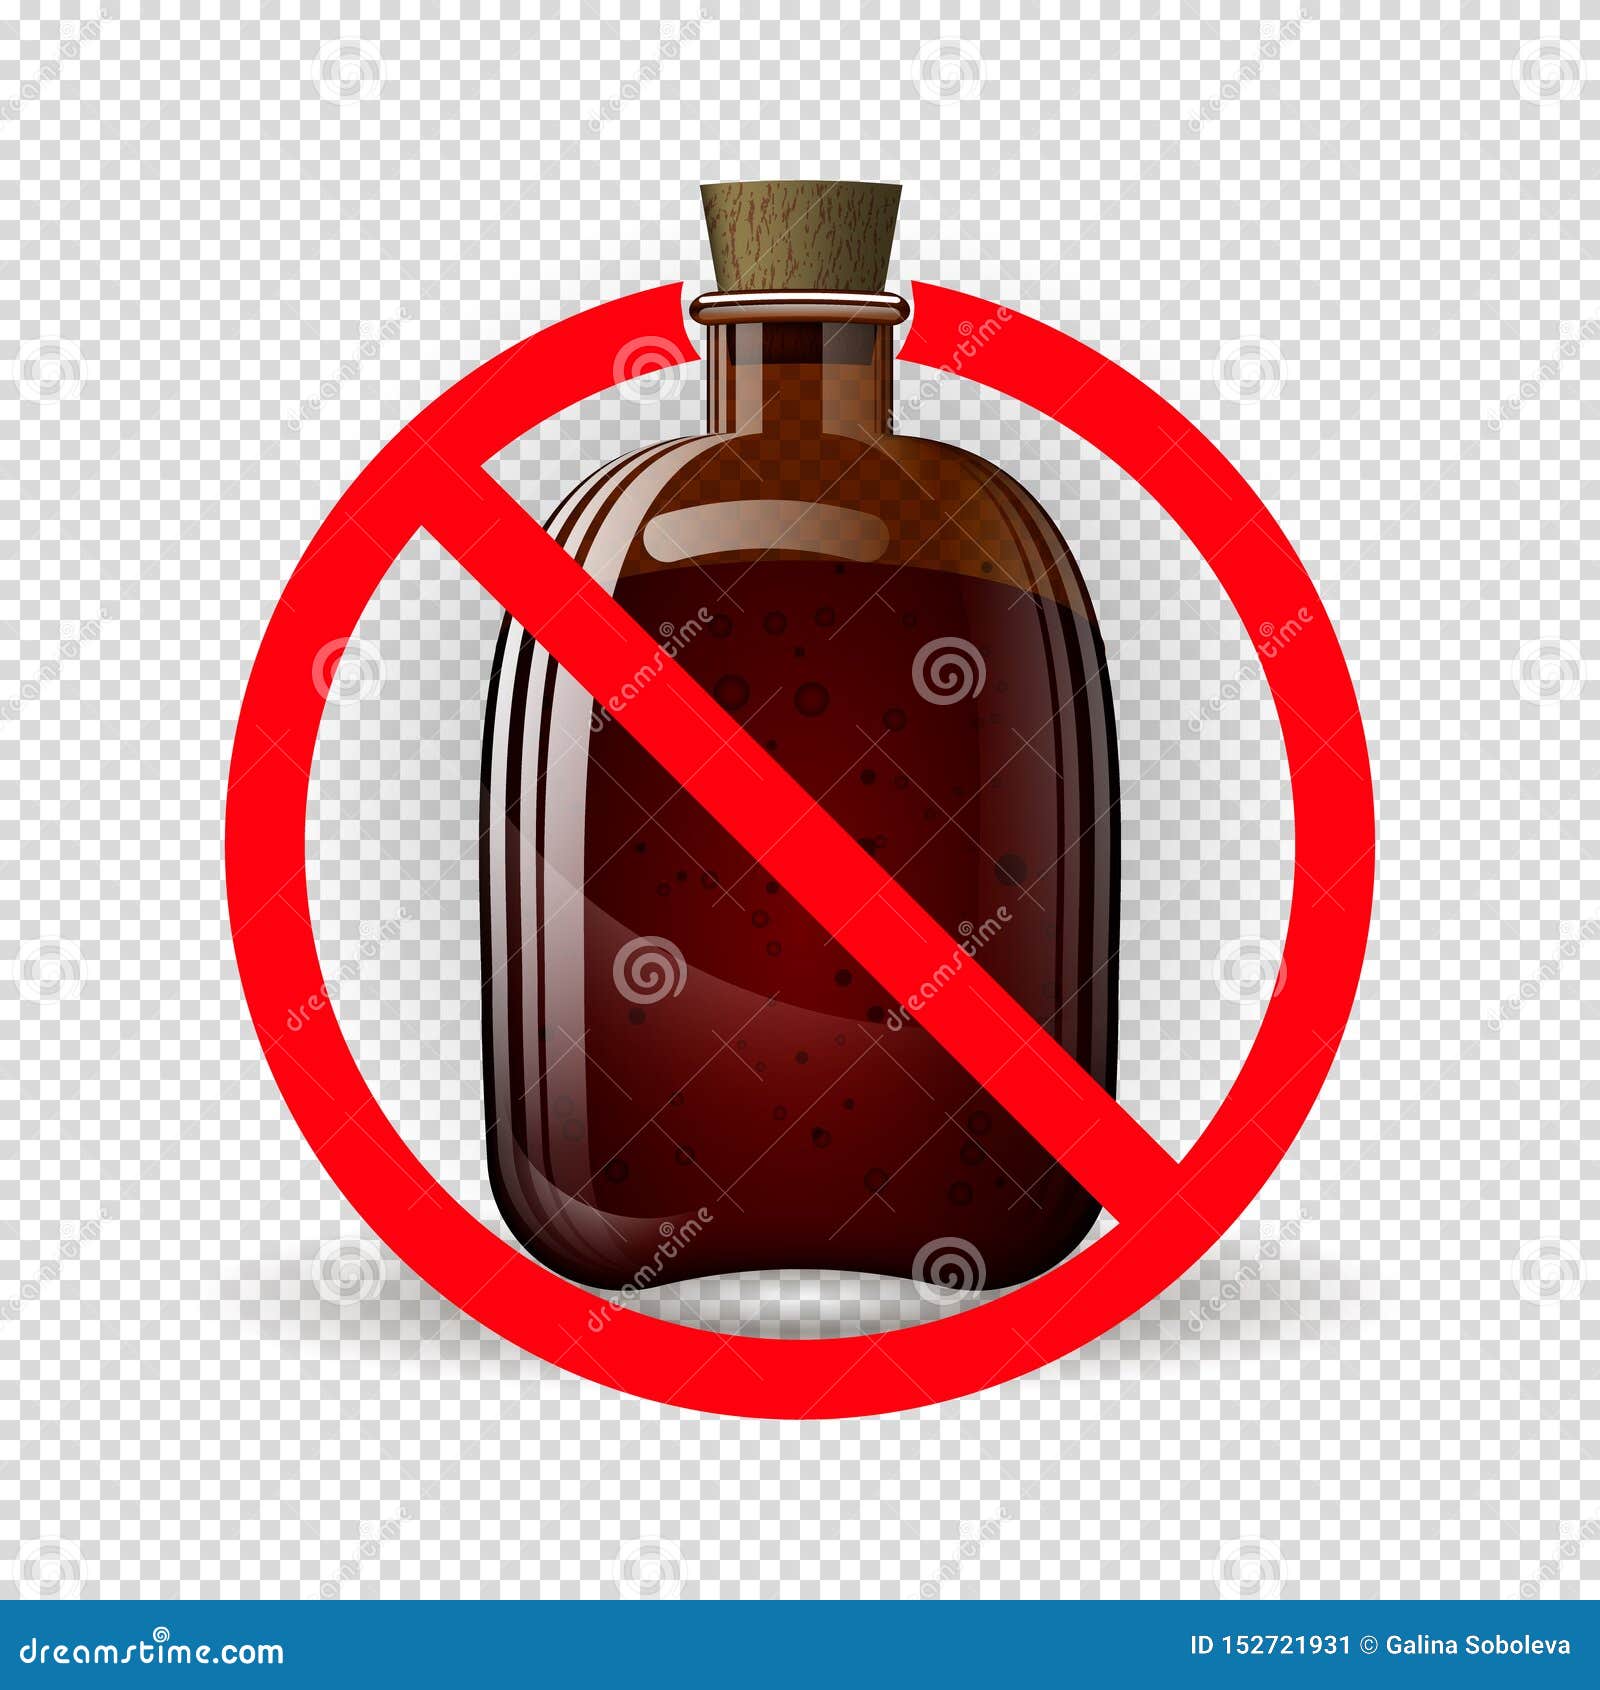 Стоп бан концерт. Знак антиалкоголь. Бутылка анти алкоголь. Знак бутылка под запретом. Знак алкоголь запрещен.